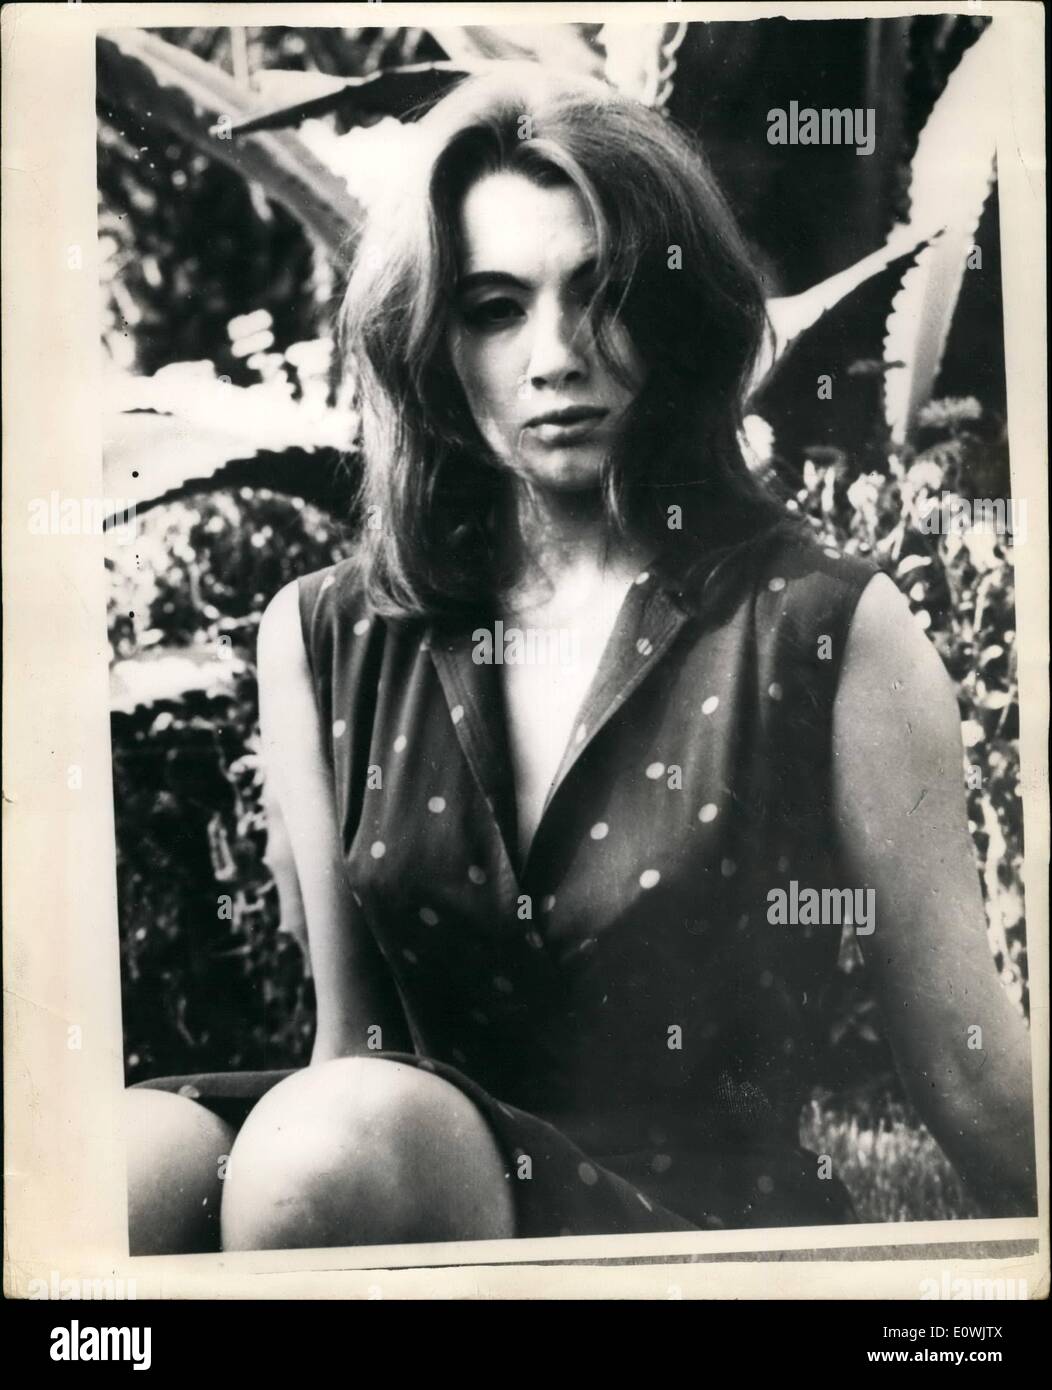 Giugno 06, 1963 - Non sta andando essere una star del cinema: 22-anno-vecchio Christine Keeler ha annunciato a canne di recente film festival thaty Foto Stock